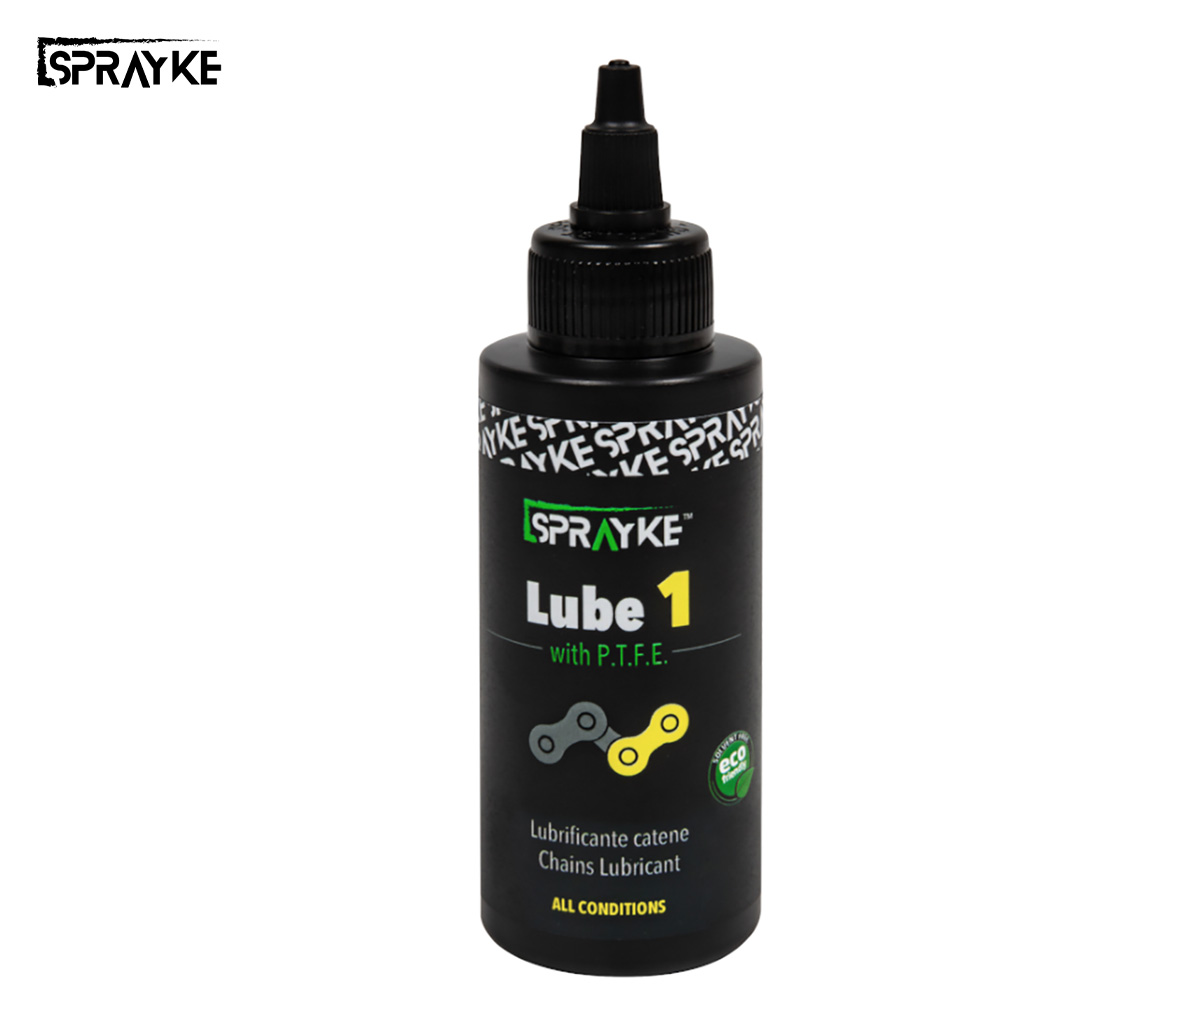 Il nuovo prodotto per lubrificare la bicicletta Sprayke Lube 1